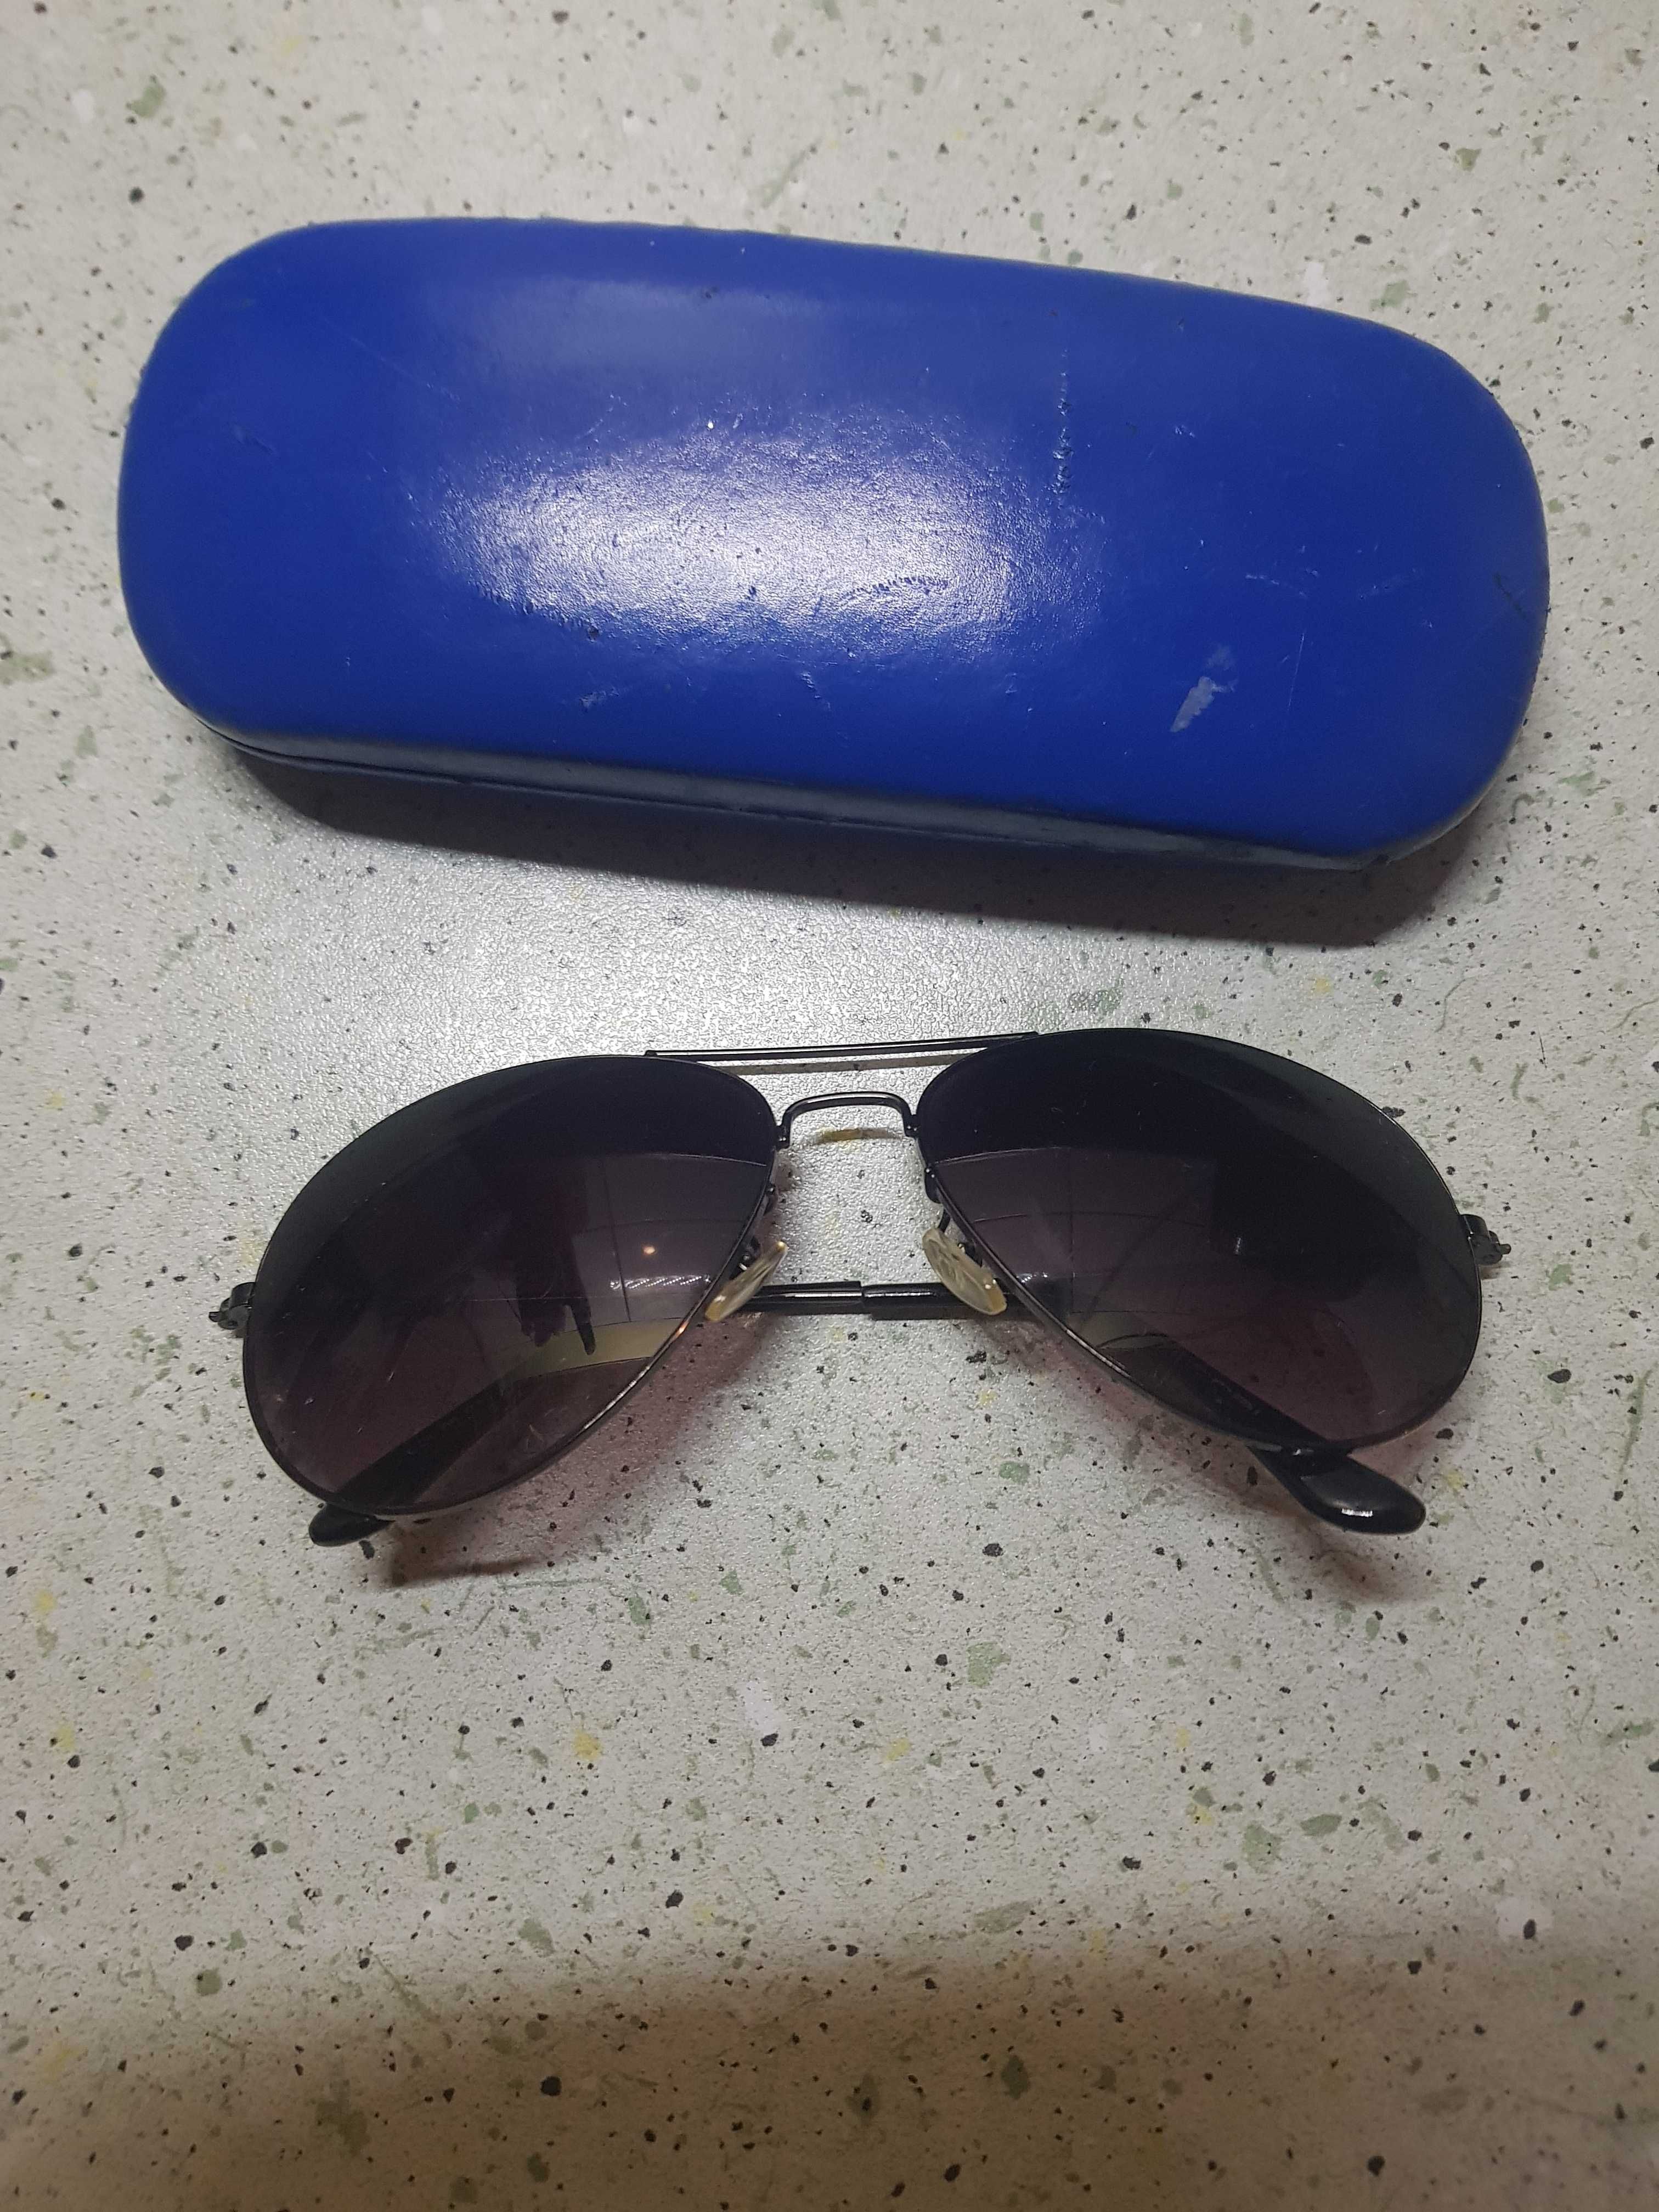 Okulary przeciwsłoneczne męskie + etui 15 zł